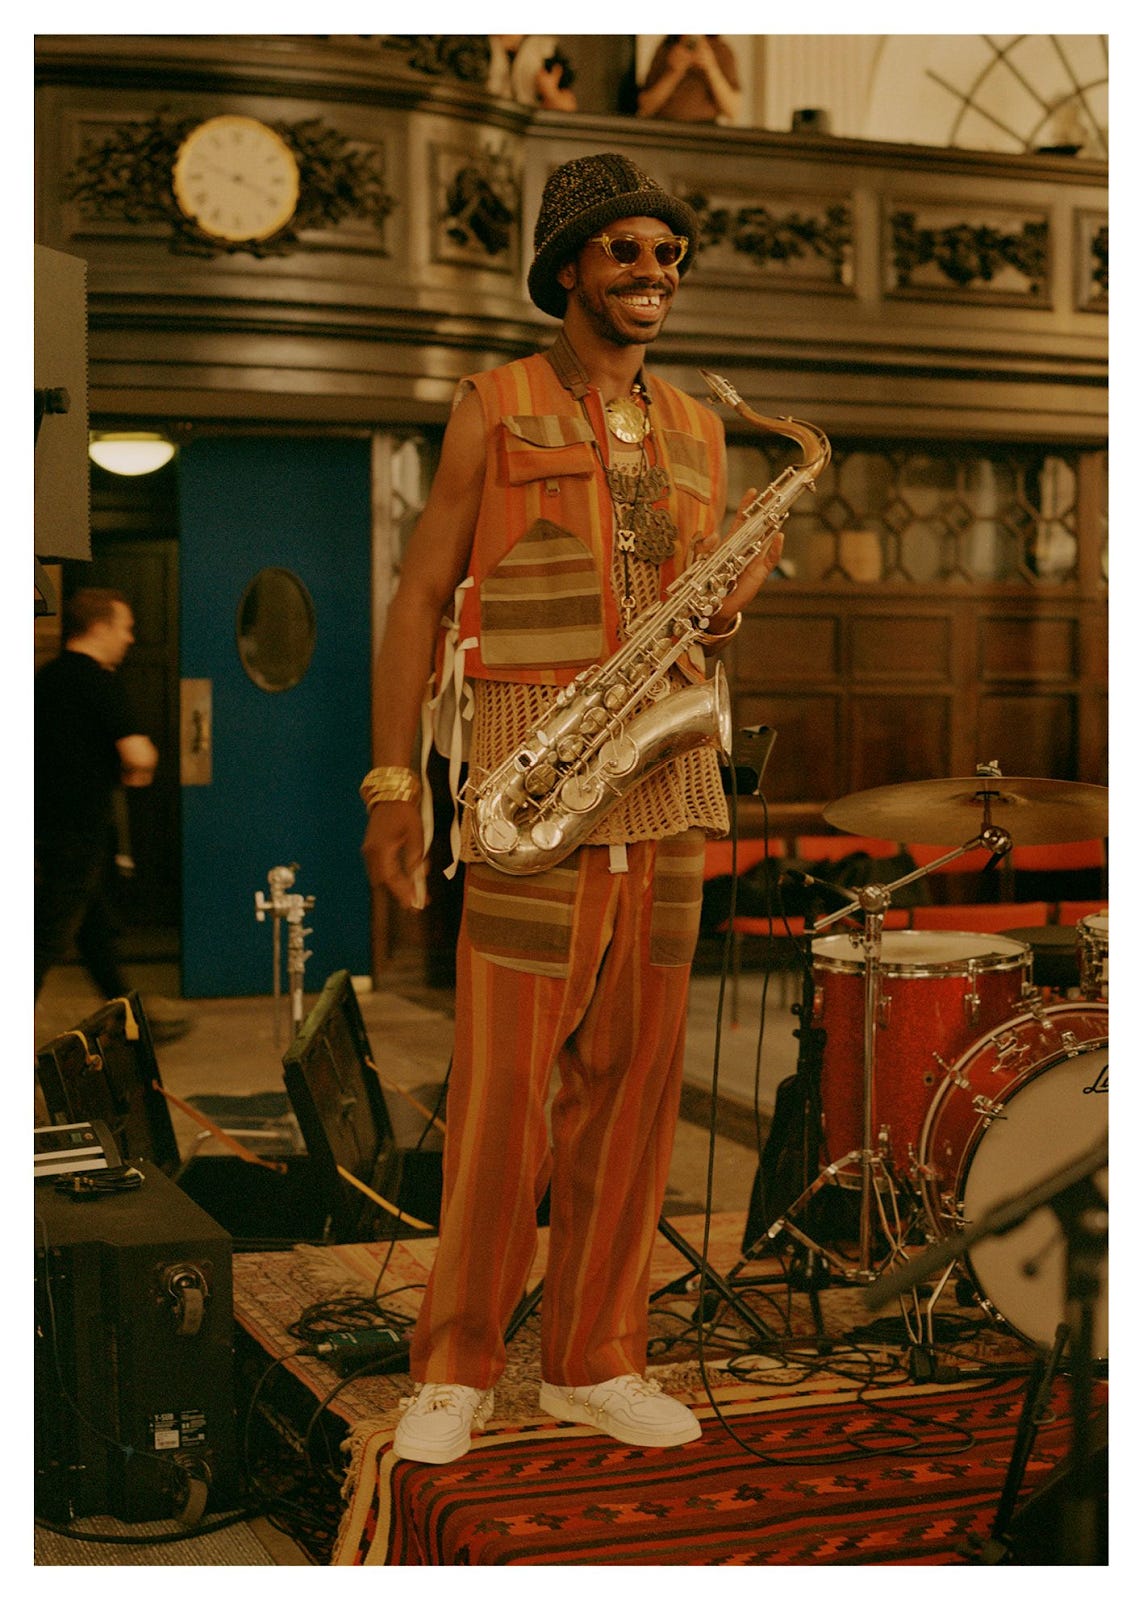 Ein Bild, das Musikinstrument, Musik, Saxofon, Kleidung enthält.

Automatisch generierte Beschreibung